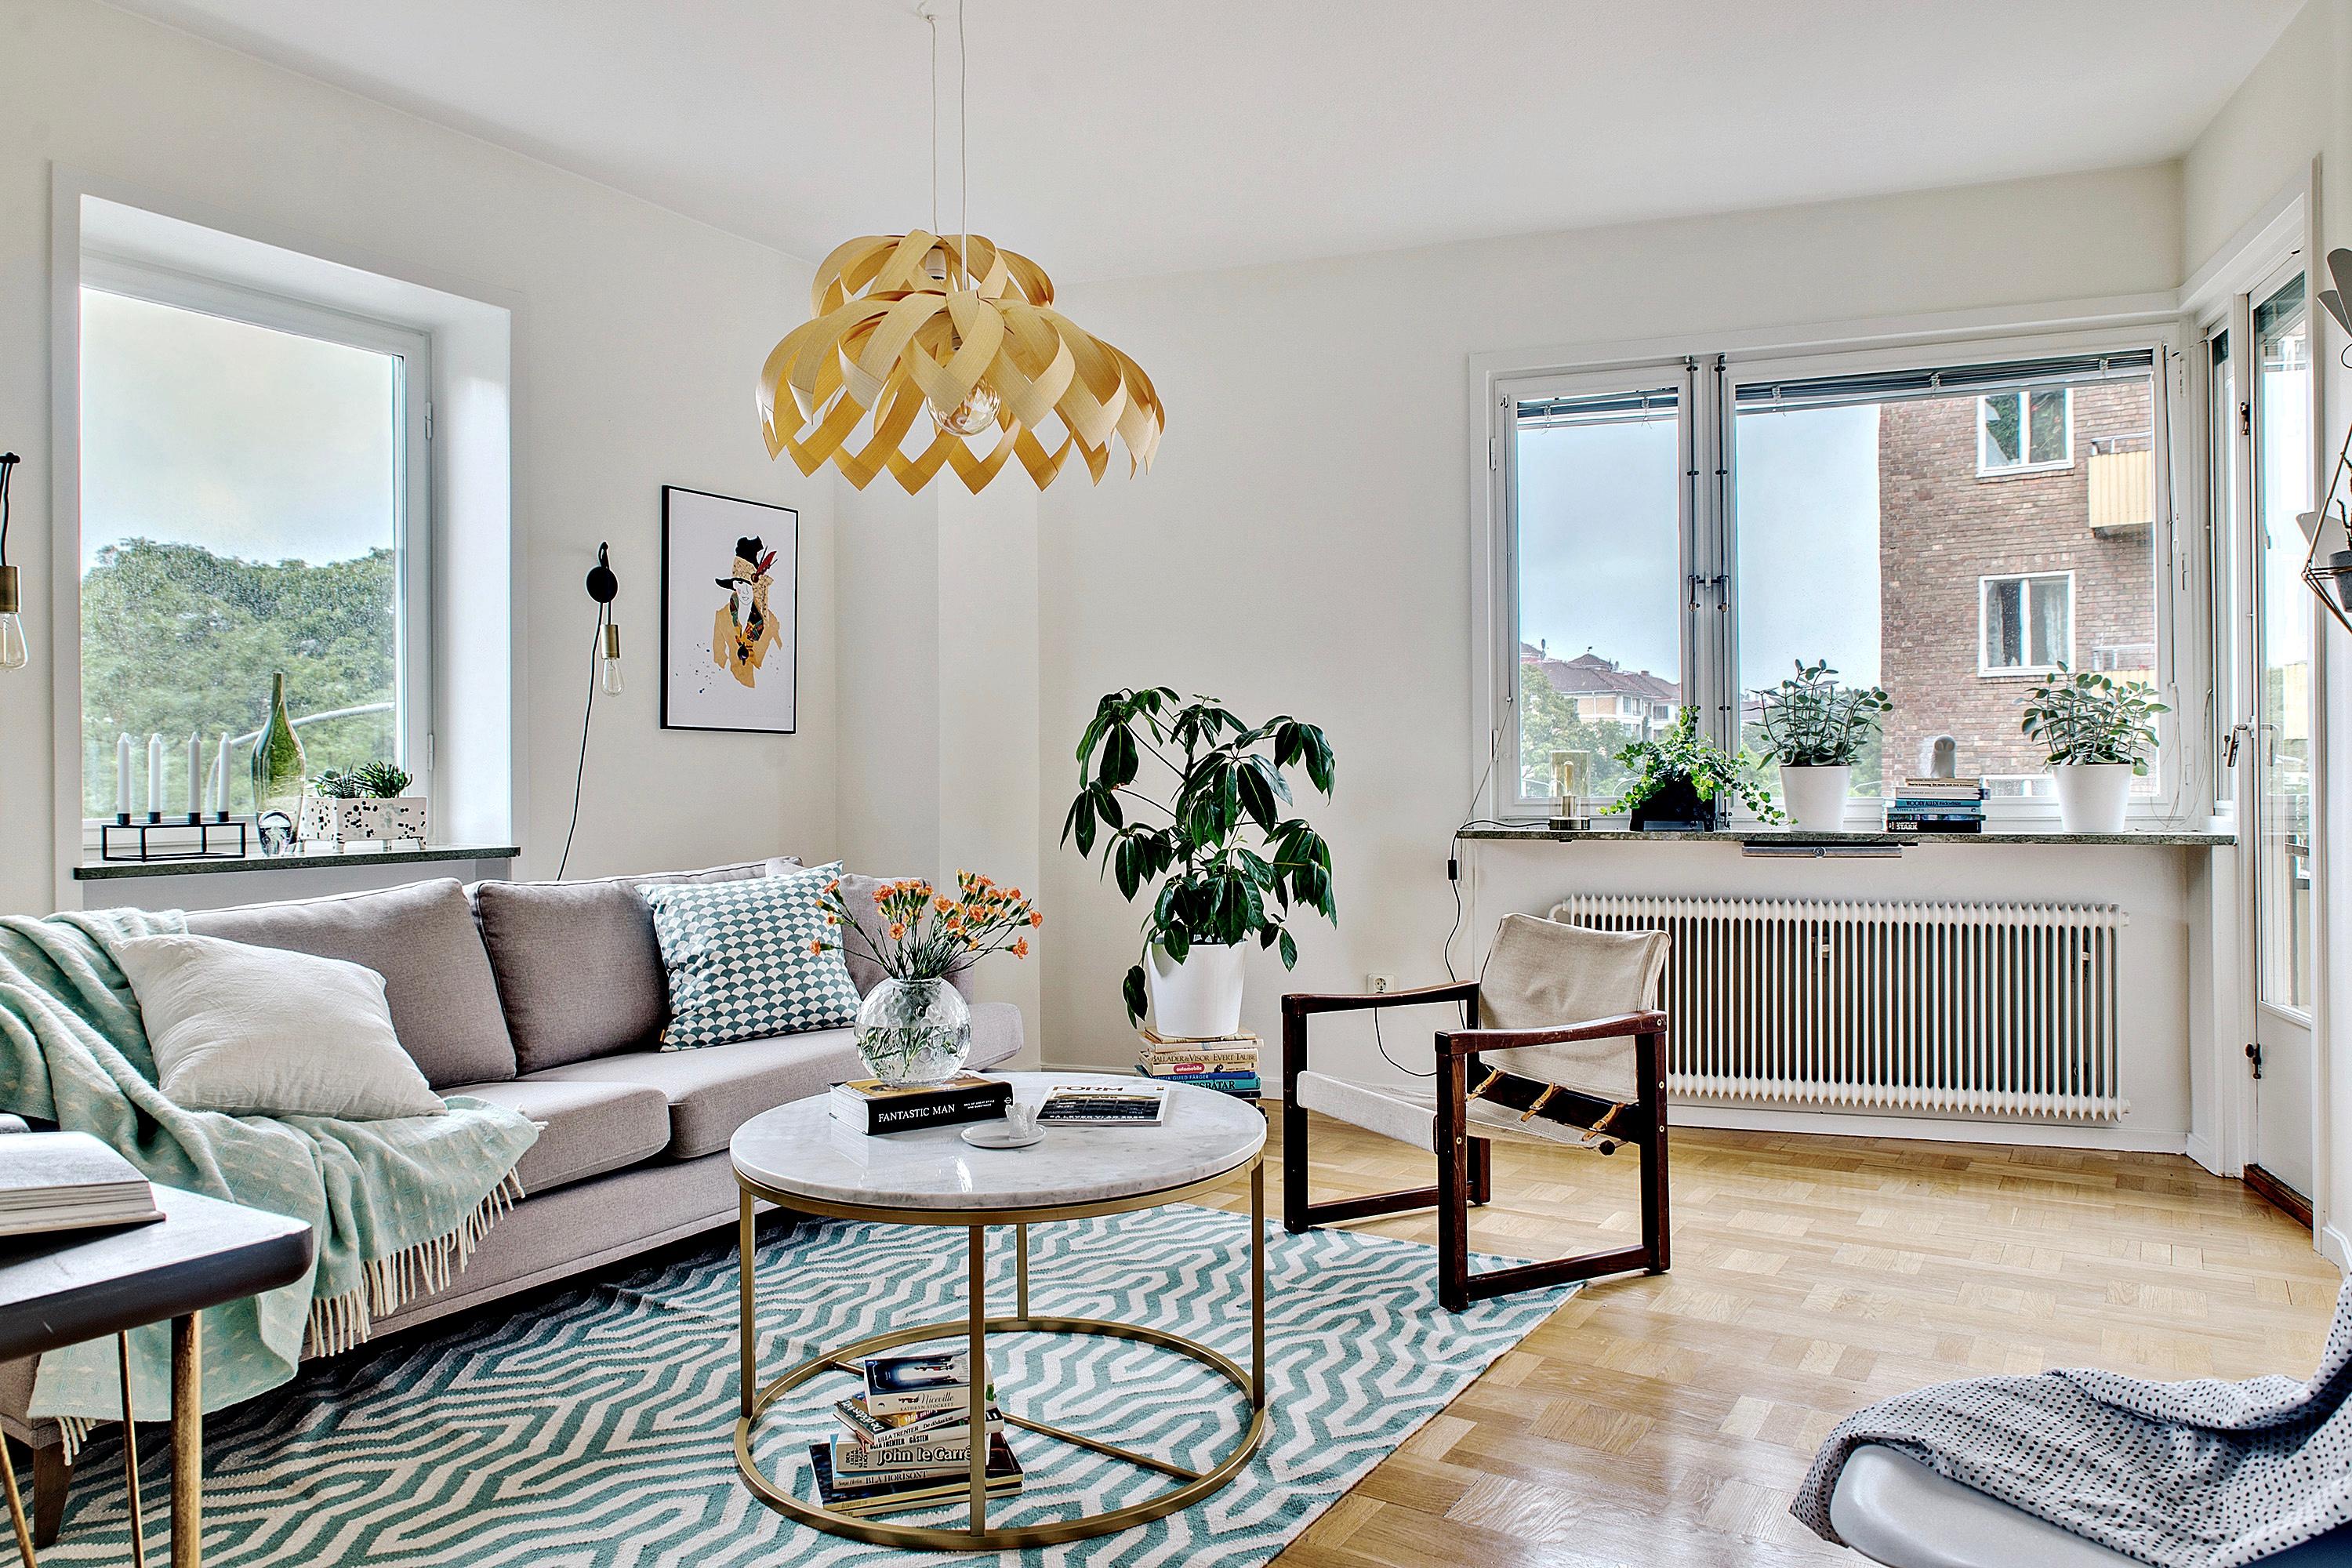 Wohnzimmer im skandinavischen Stil #wohnzimmer ©Mainstreet Stockholm